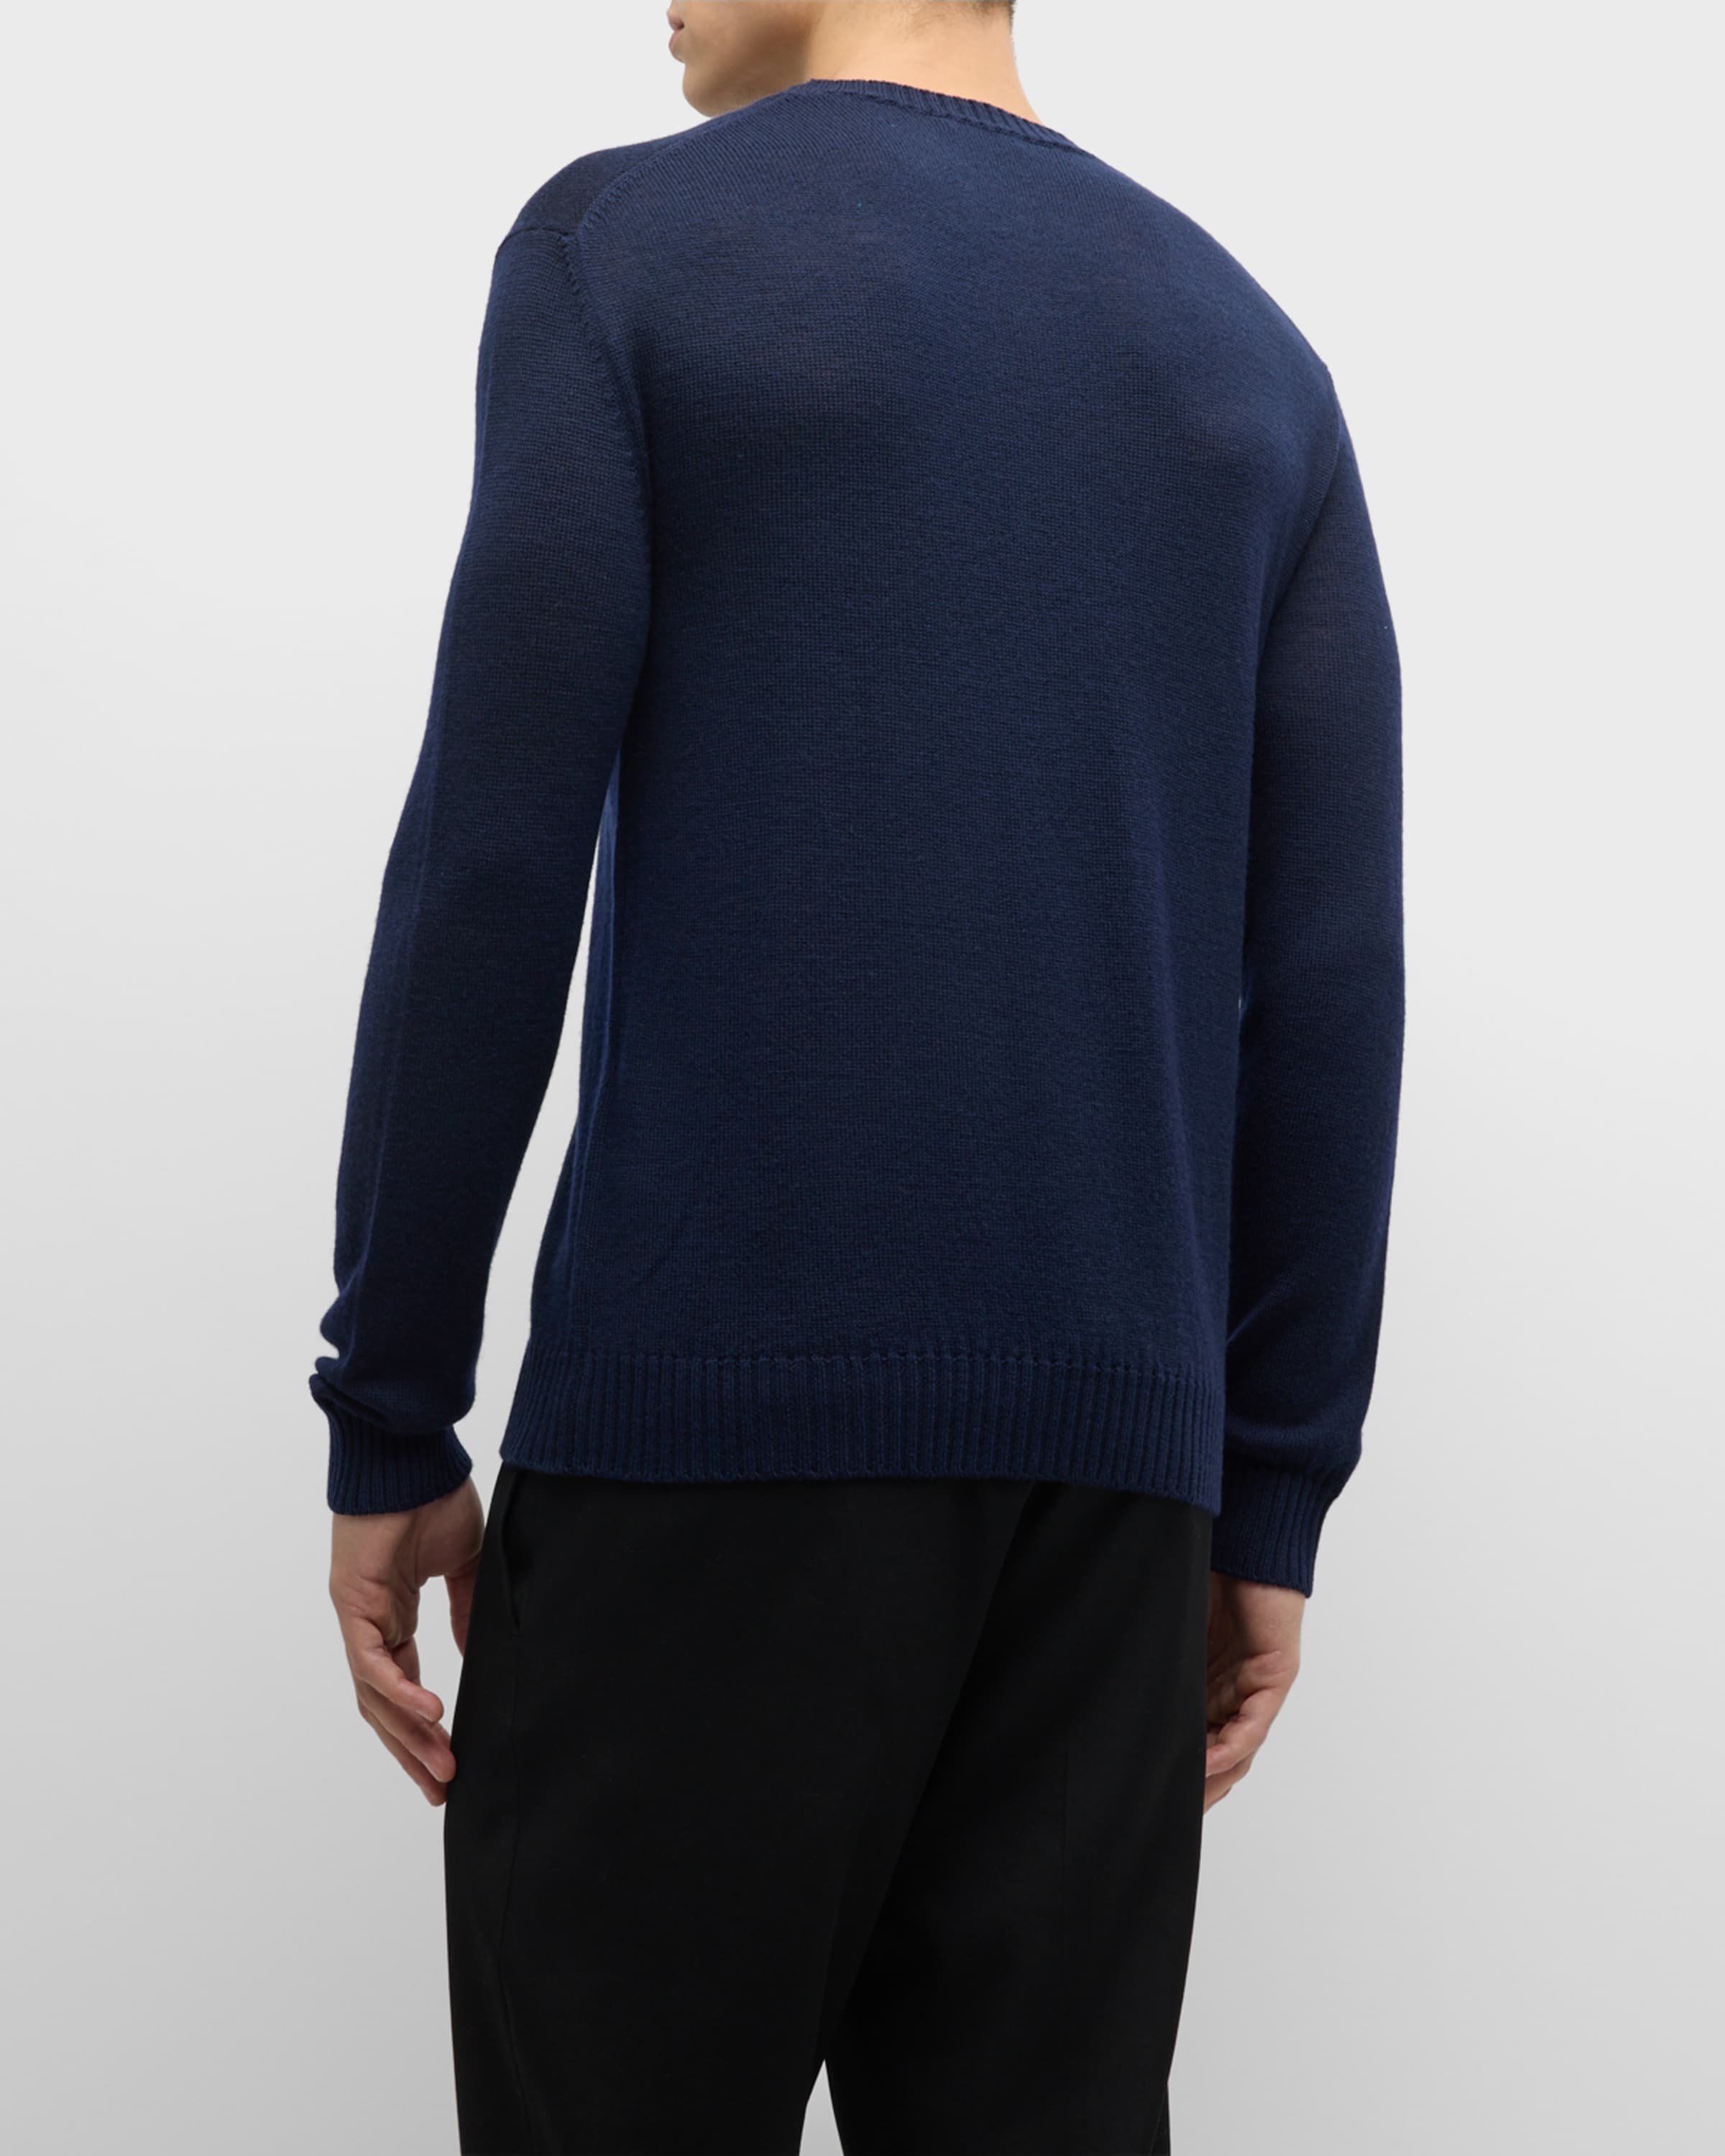 Men's Wool Loose Knit Sweater - 4